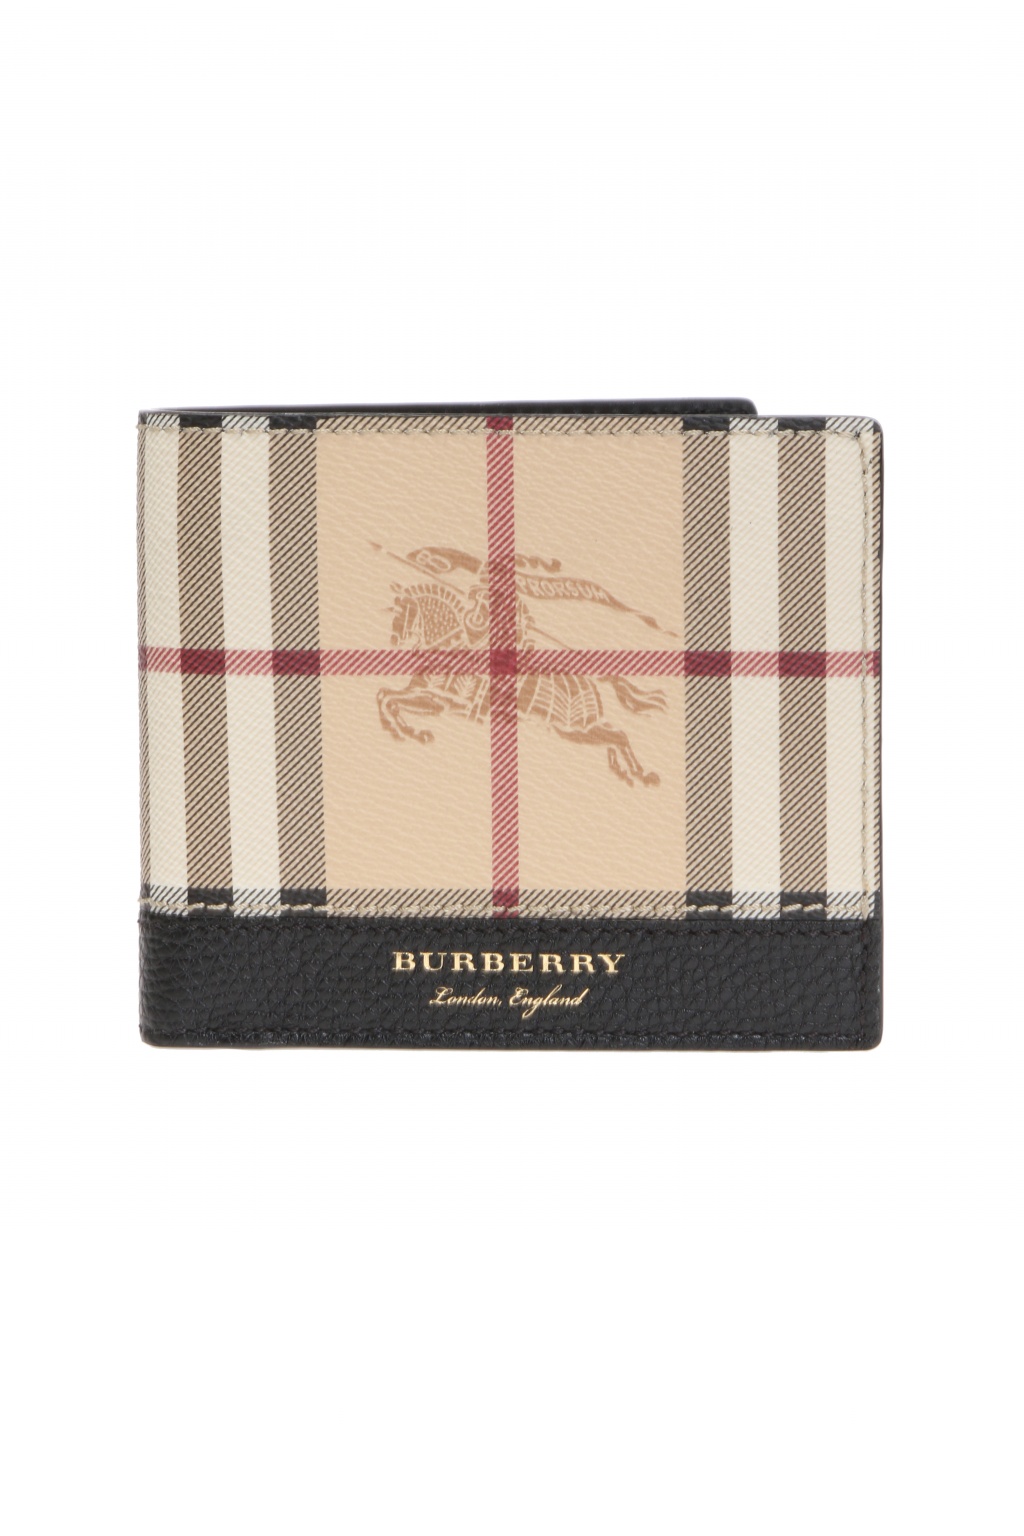 Burberry Haymarket Check Bifold Wallet in Brown for Men